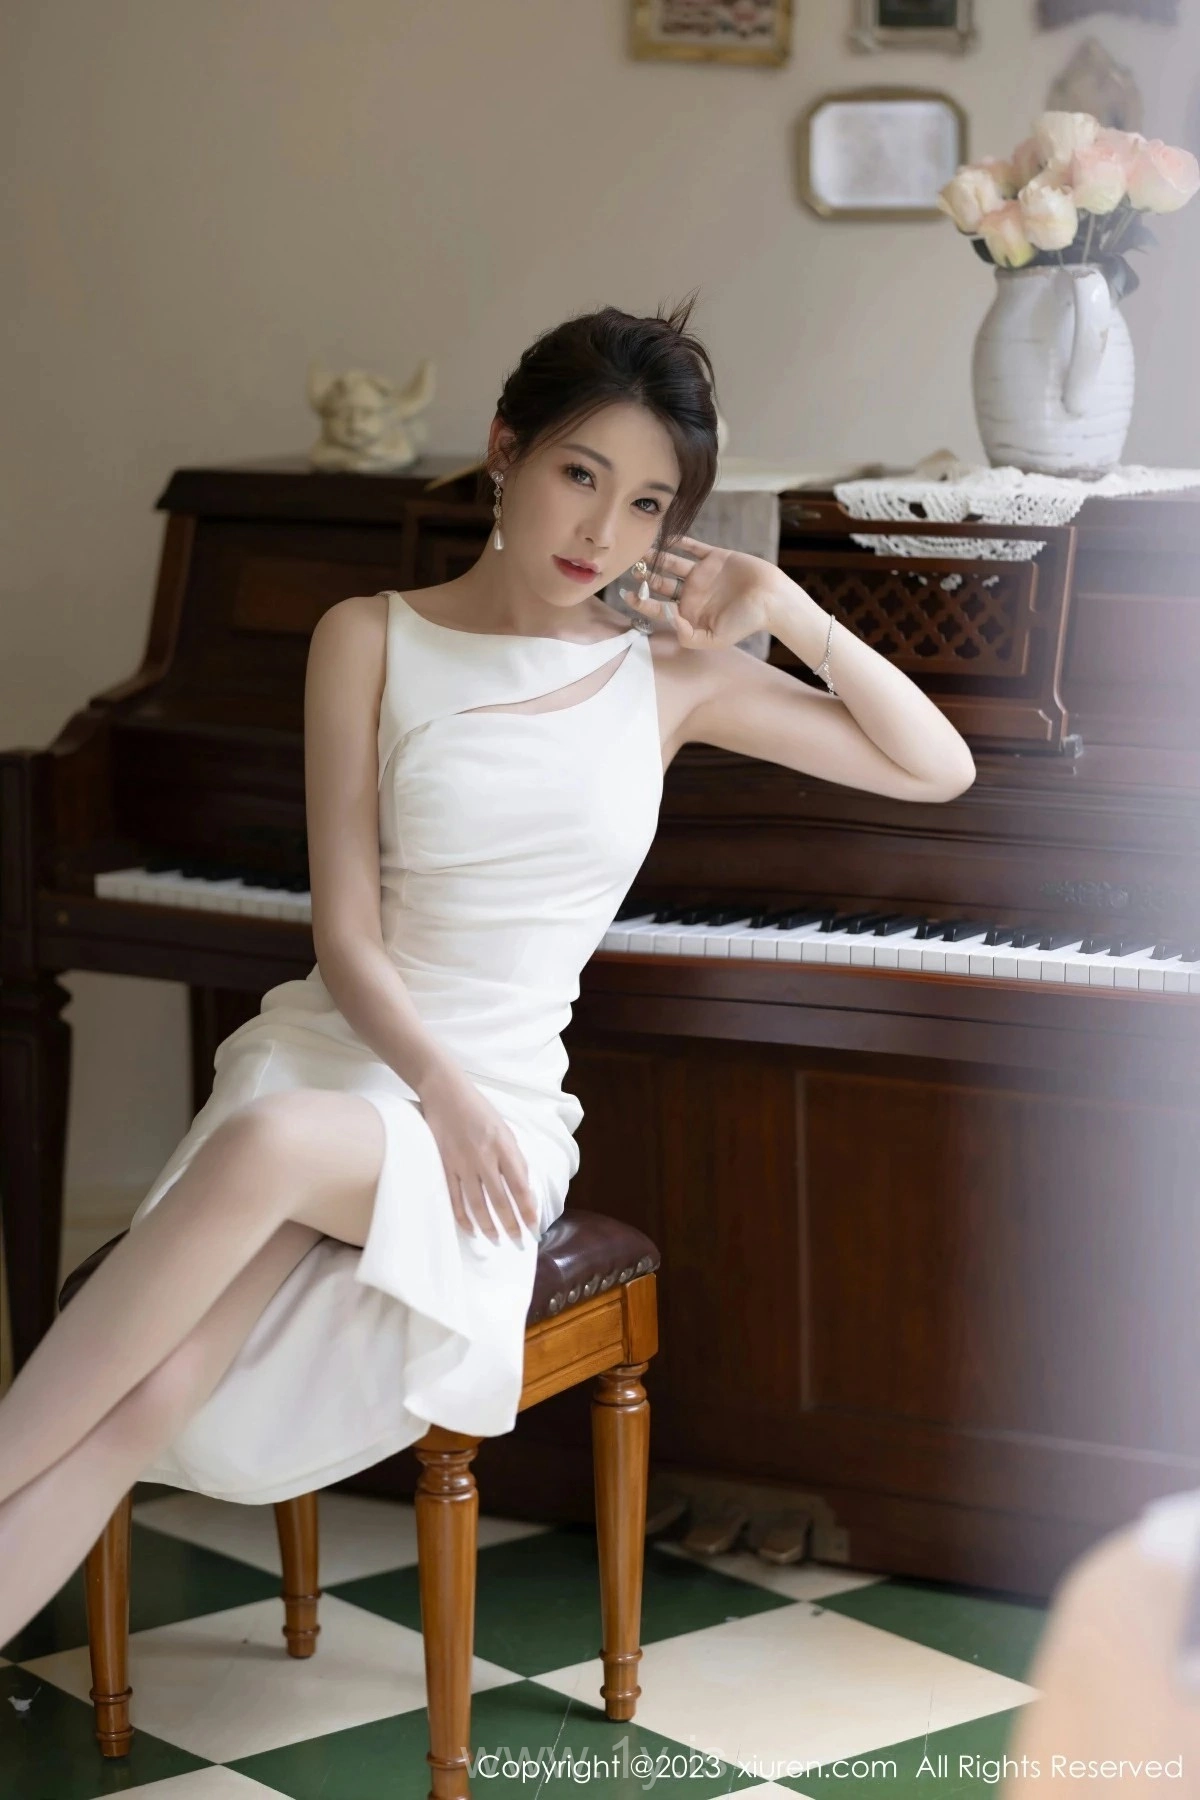 XIUREN(秀人网) No.7155 Fancy Chinese Beauty 徐莉芝Booty